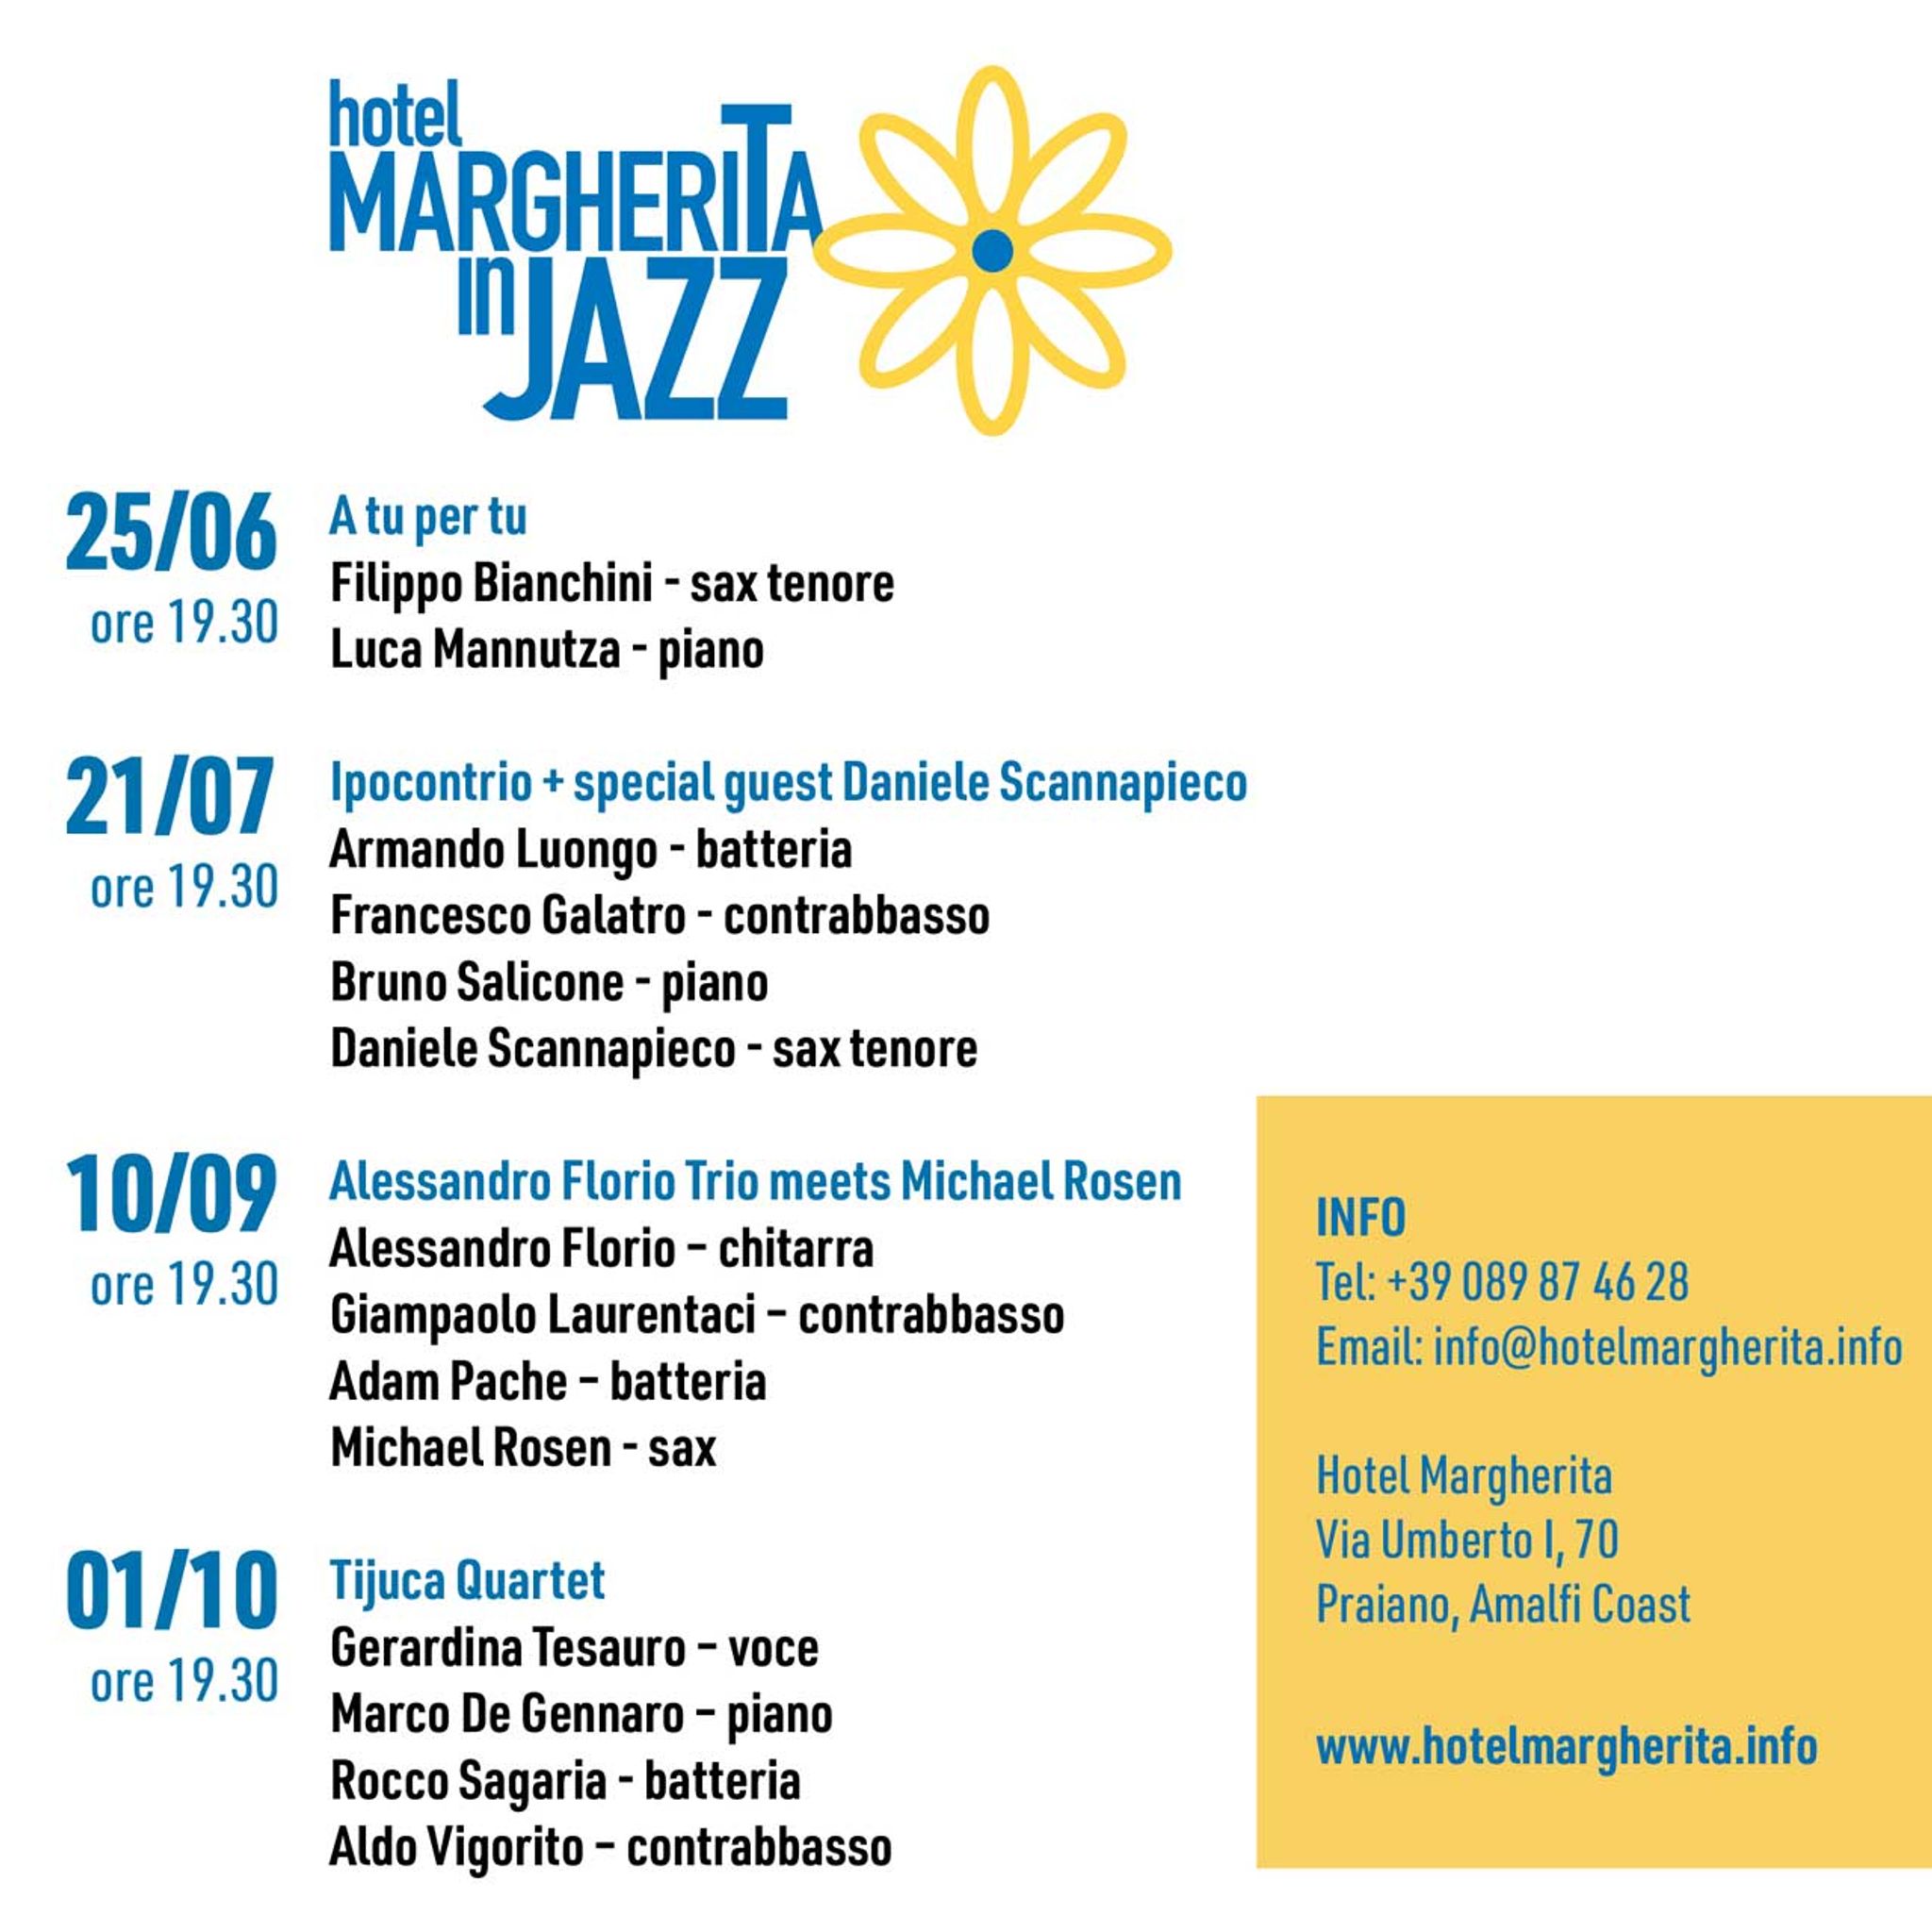 Hotel Margherita in Jazz